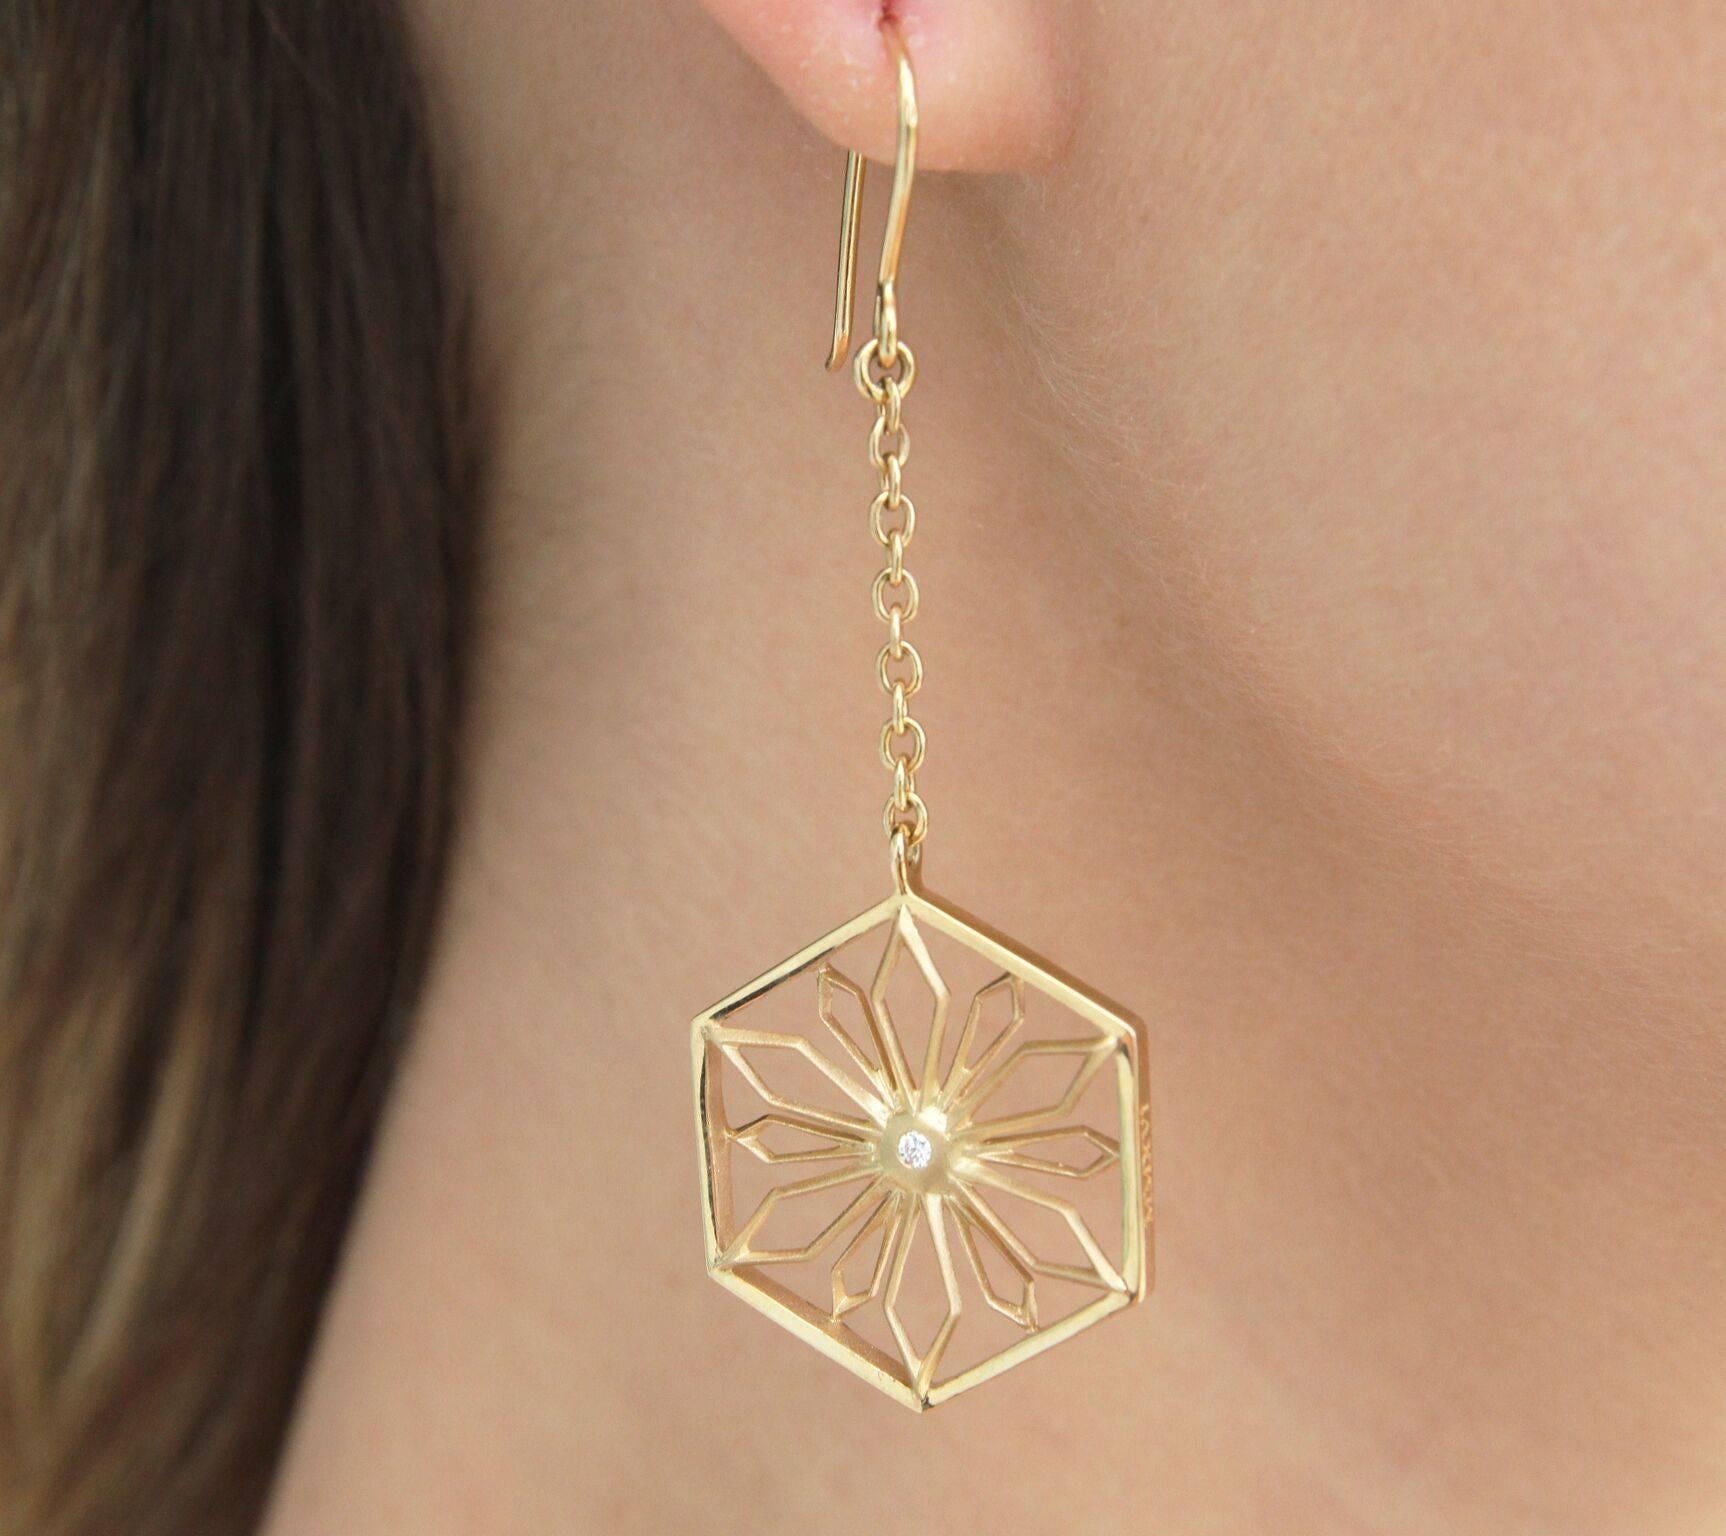 Diese limitierte Auflage der Snowflakes Honor Gold Earrings funkelt vor Kraft. Die Diamanten sollen Kraft und Klarheit beschwören. Dieses Stück ist Teil der Sammlung THOSCENE von John Brevard. Alle Stücke der THOSCENE-Kollektion von John Brevard, so